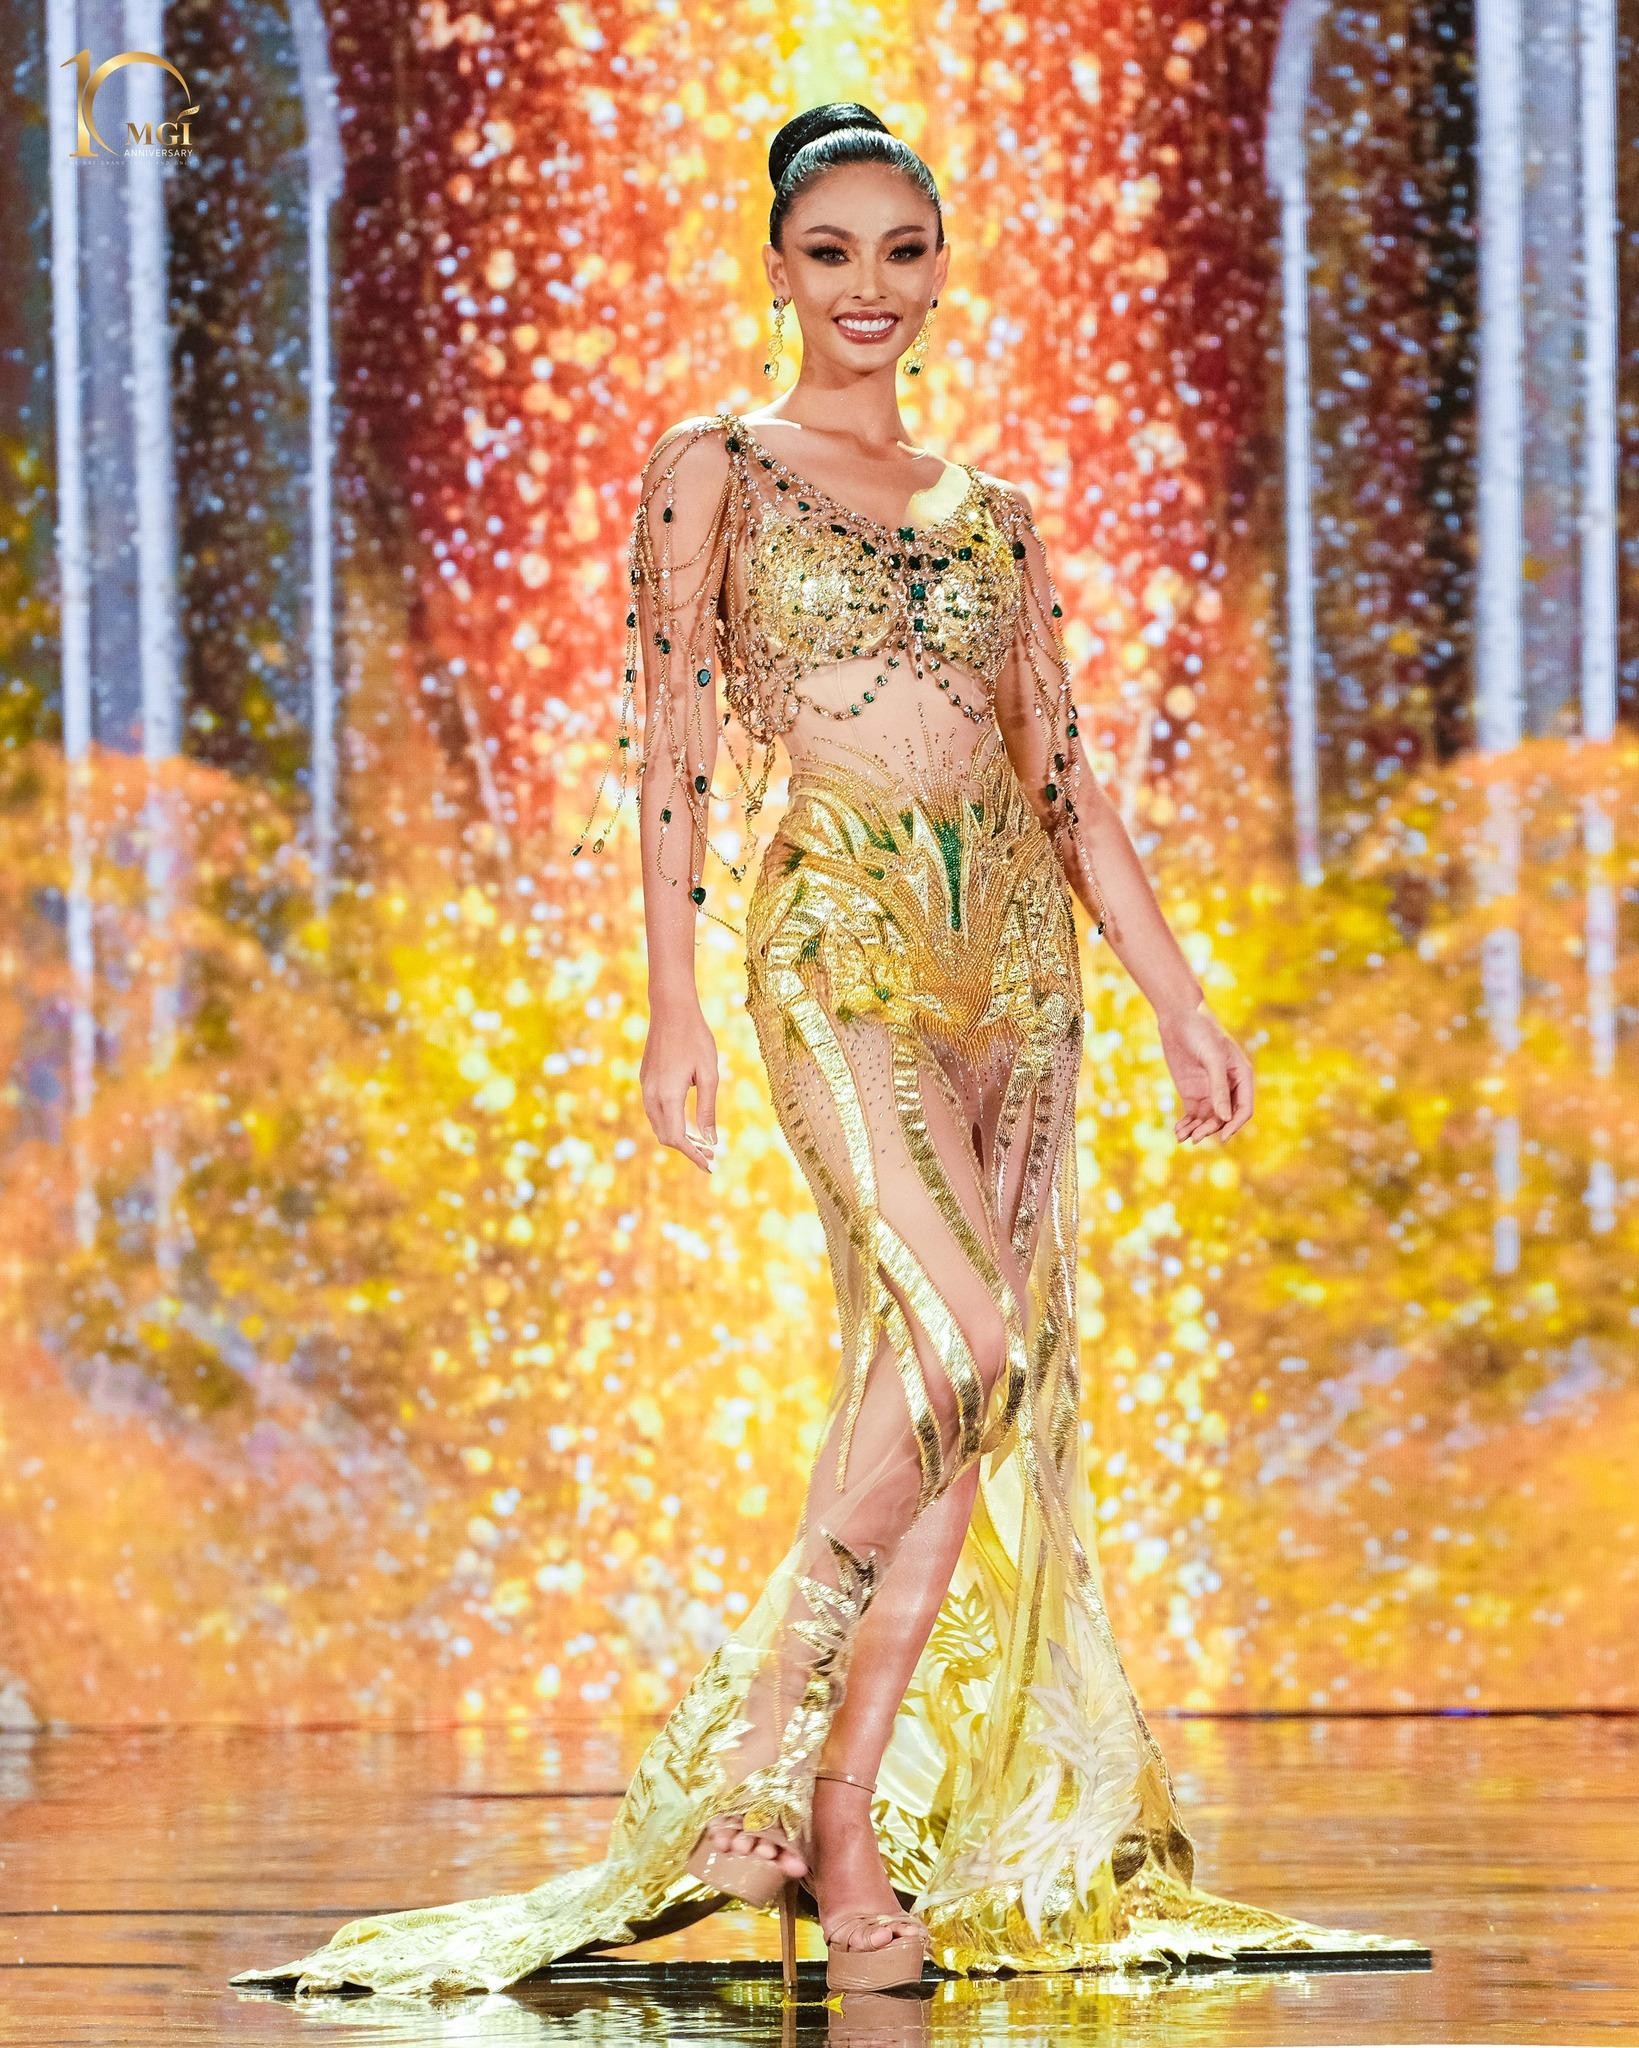 Váy dạ hội gợi cảm ở bán kết Hoa hậu Hòa bình - Ảnh 23.